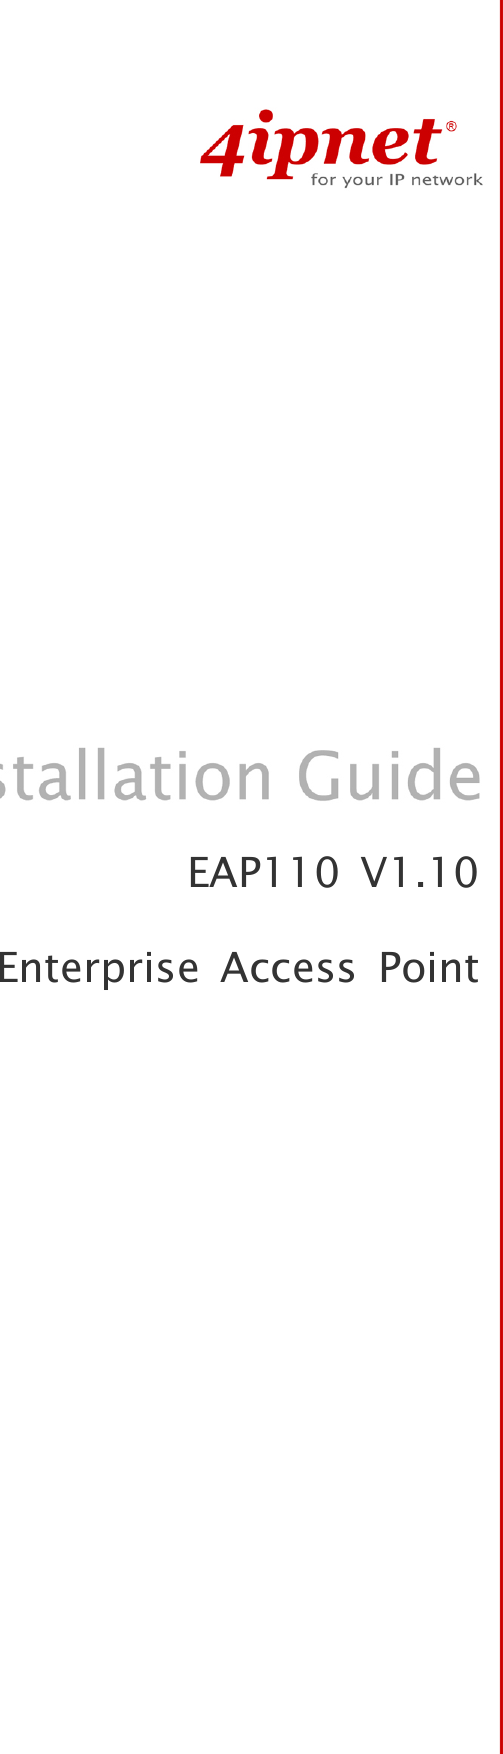   EAP110 V1.10 Enterprise Access Point 